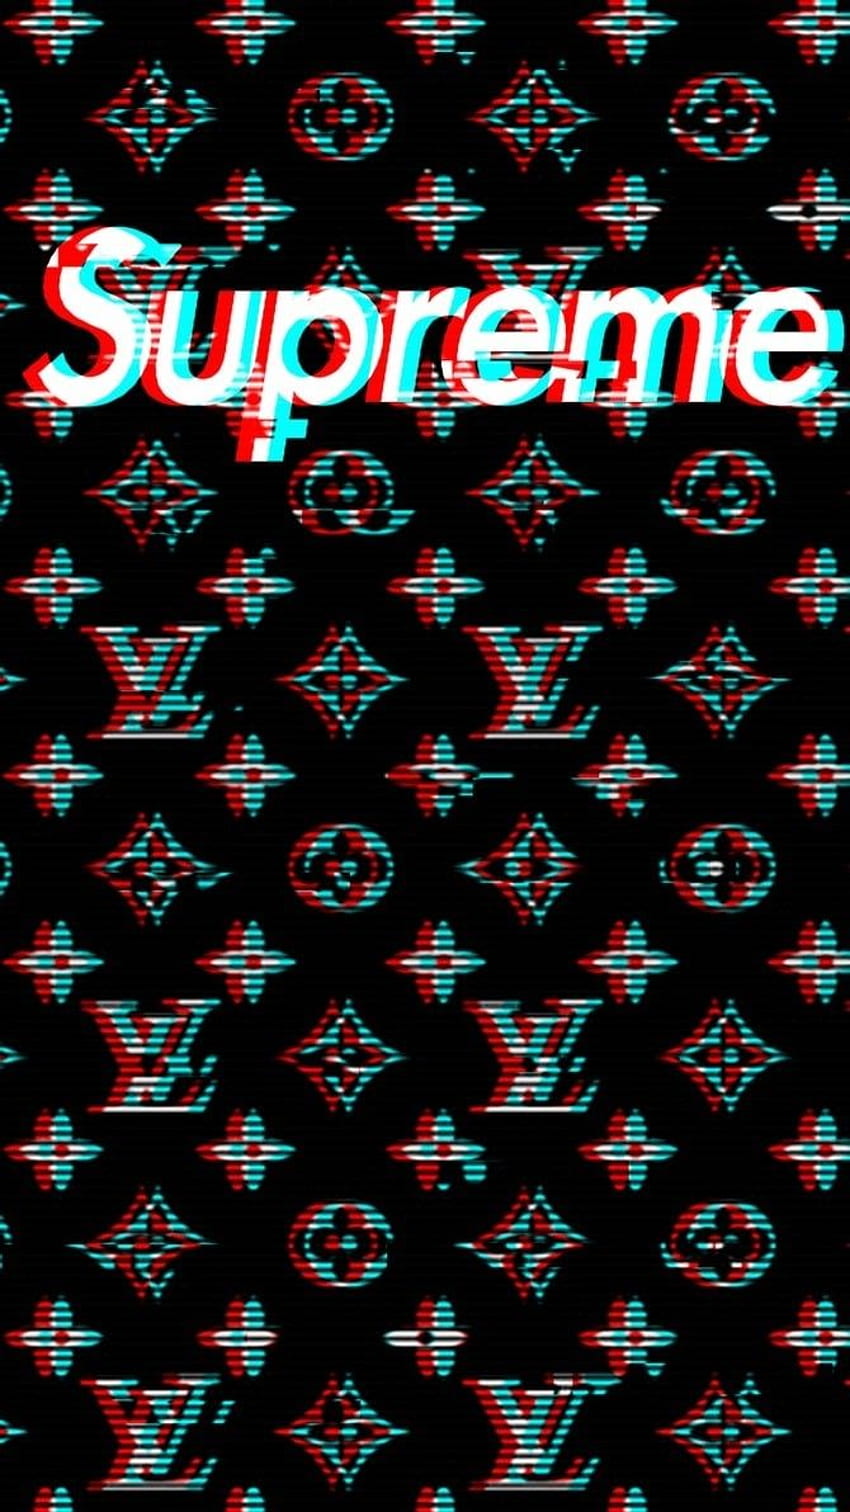 Louis Vuitton x Supreme pattern Wallpaper  Imagem de fundo para iphone  Iphone de fundo Planos de fundo